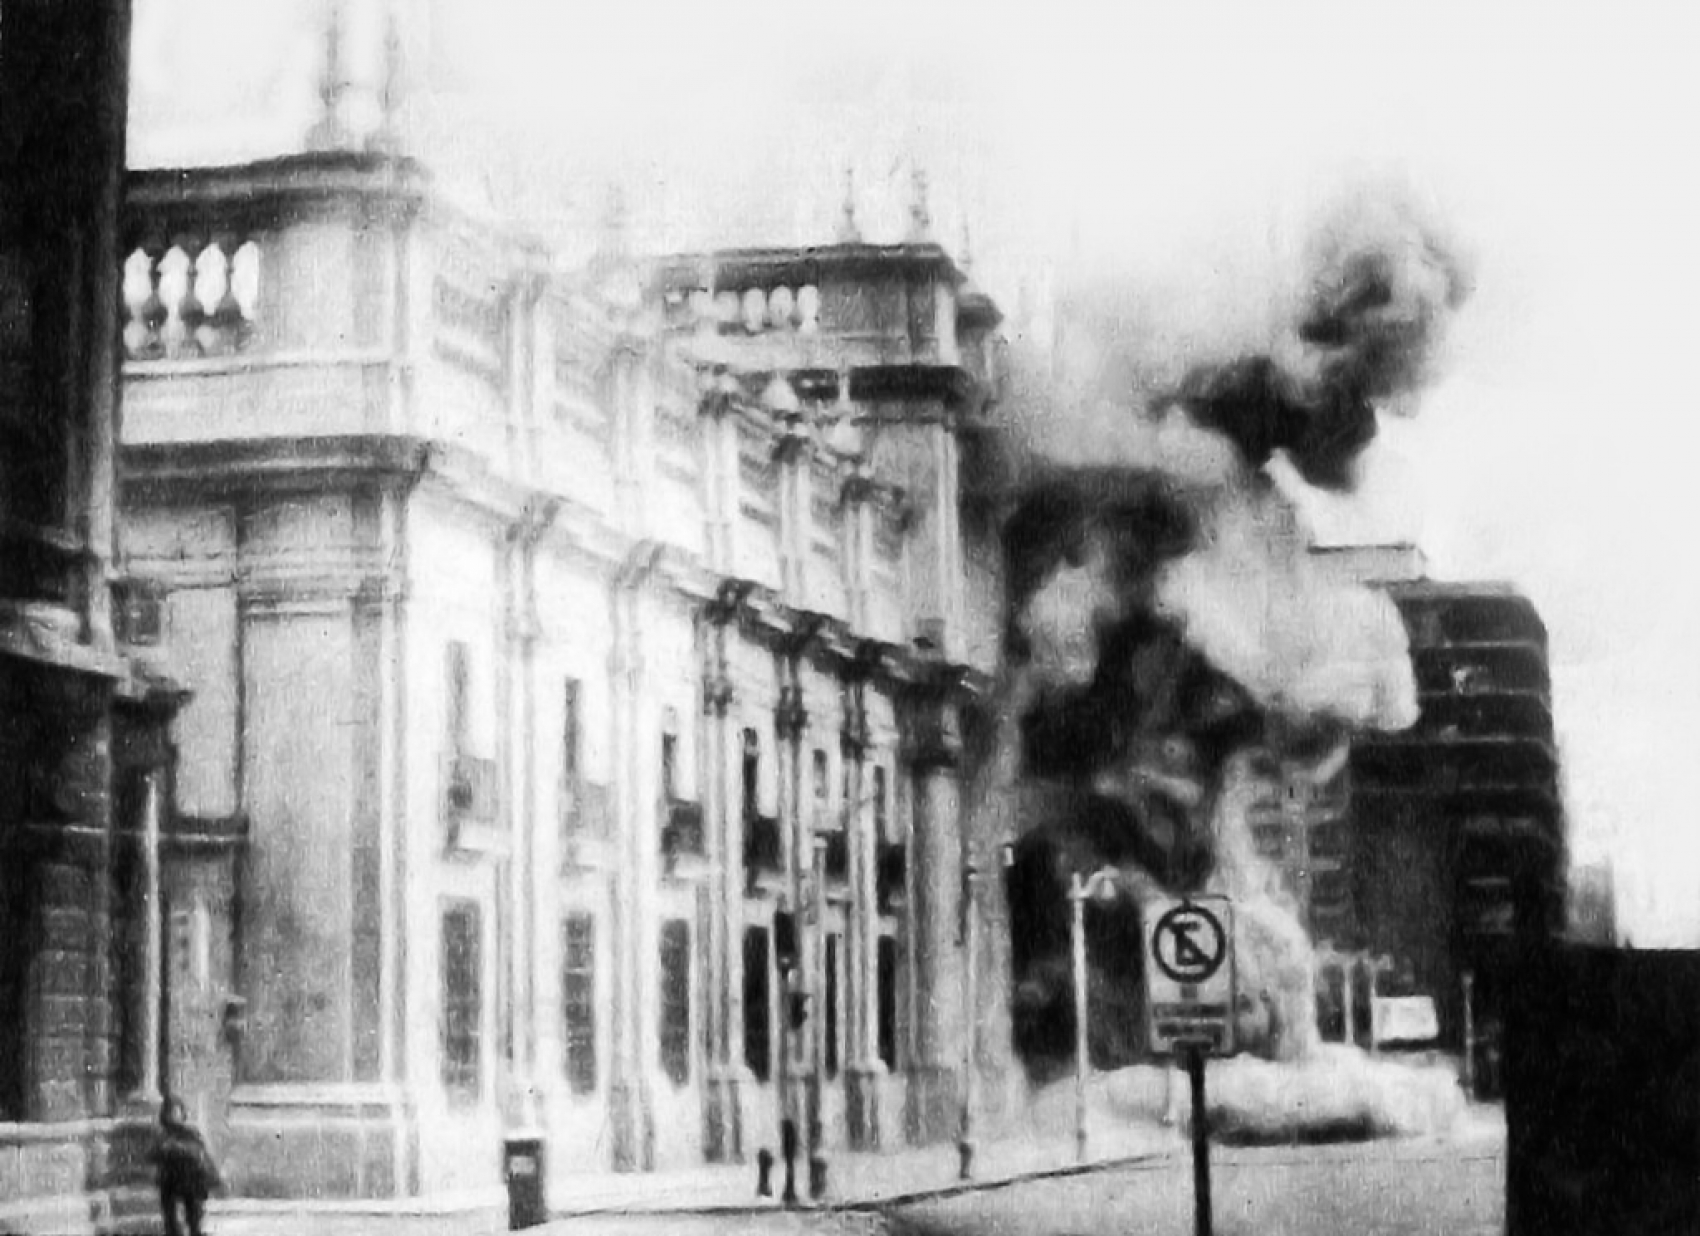 Le bombardement du palais de La Moneda, siège de la présidence chilienne, a profondément marqué les esprits nationaux et internationaux. Santiago, 11 septembre 1973. CC BY 3.0 CL